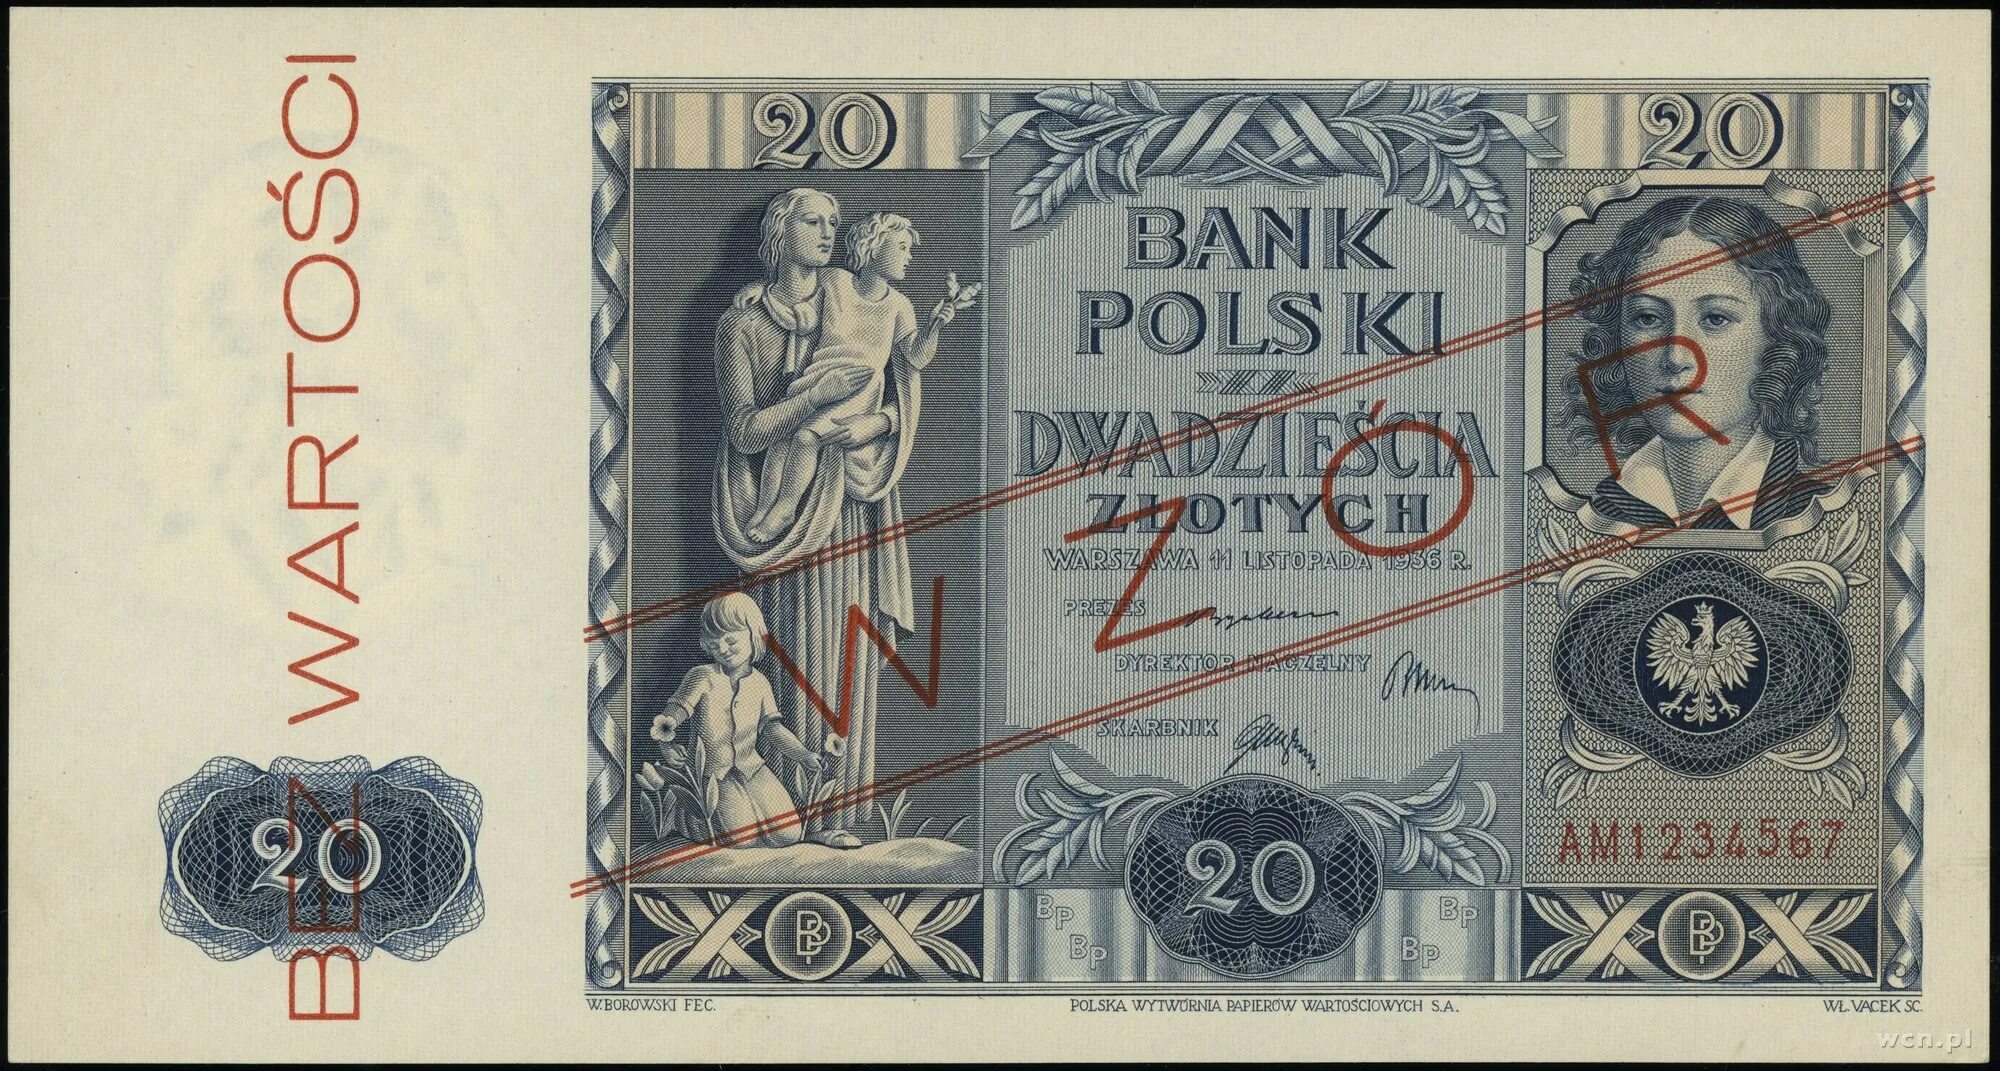 120 млн польских злотых. Банкноты Польши 1936. 1000 Польских злотых в рублях. 1 Миллион польских злотых. 20 Польских злотых в рублях.